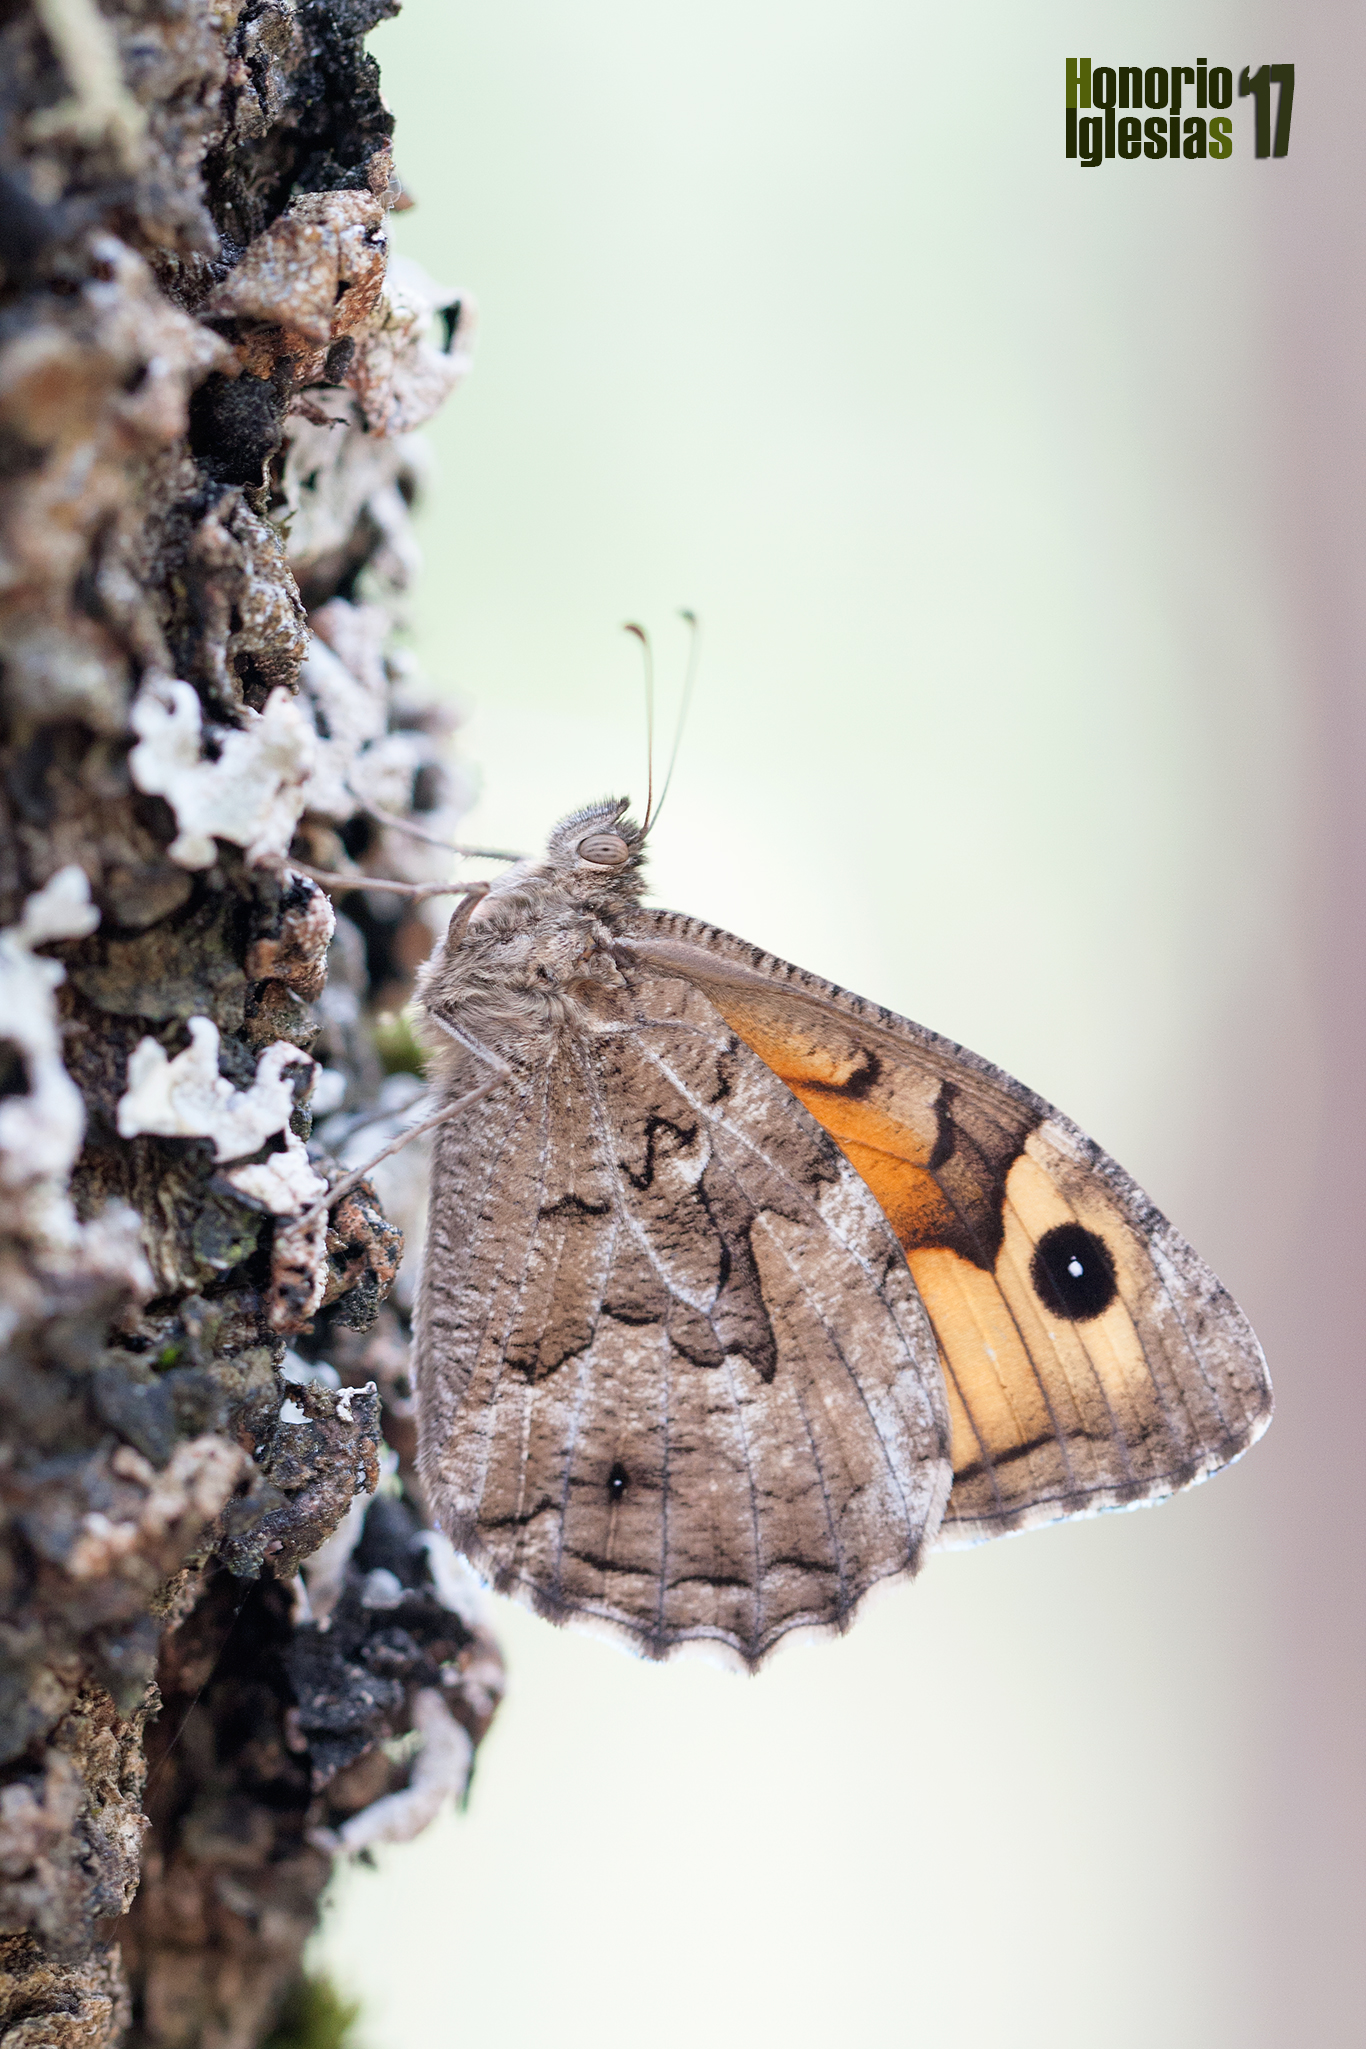 Ejemplar de mariposa sátiro rubio o pardo rubia (Hipparchia (=Parahipparchia) semele), tienen mucha querencia a posarse en los troncos de los árboles donde se camuflan a la perfección.